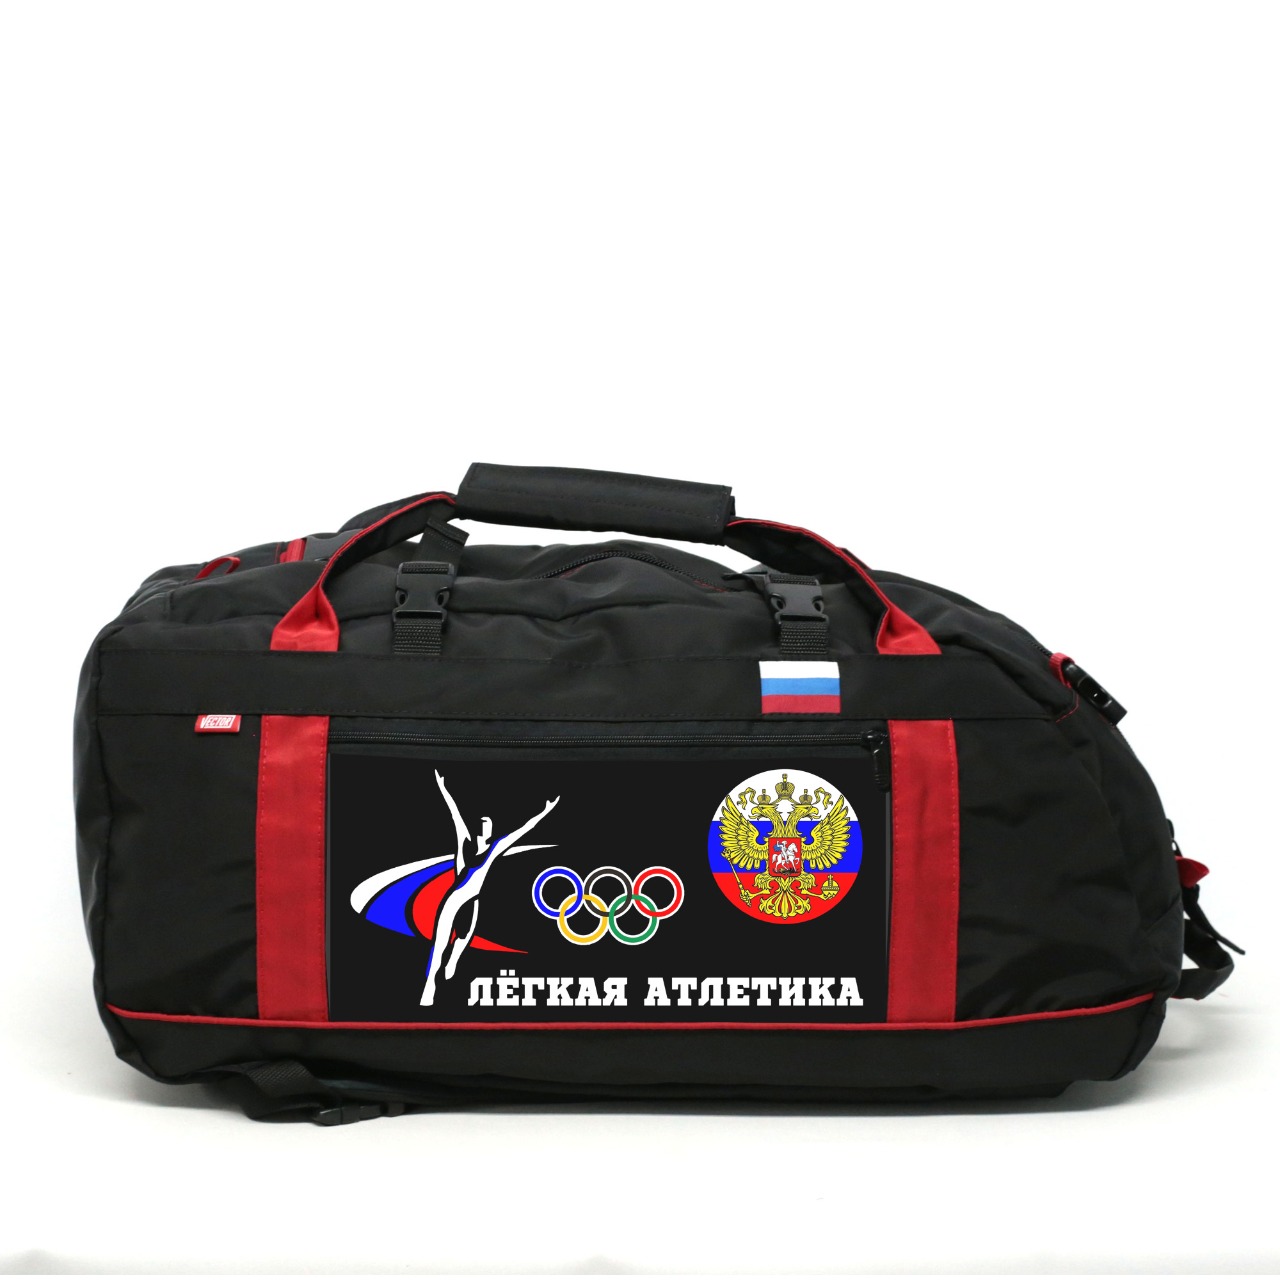 фото Спортивная сумка спорт сибирь легкая атлетика 35 литров черная